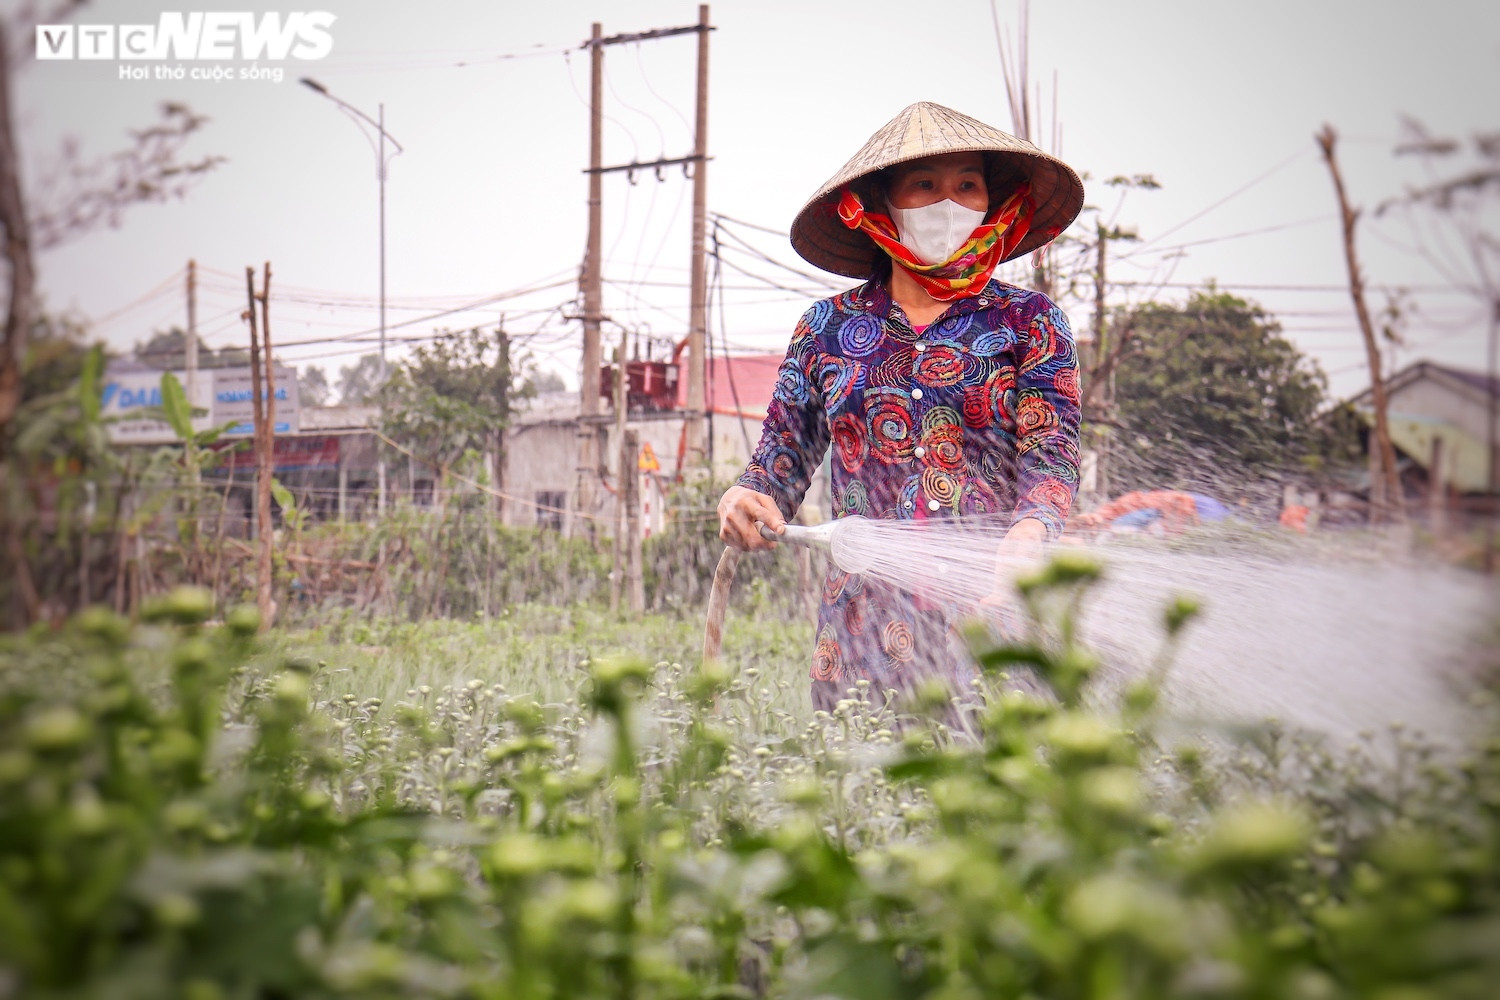 Ảnh: Vắng thương lái, người trồng hoa ở Quảng Bình lo 'mất Tết' - 1